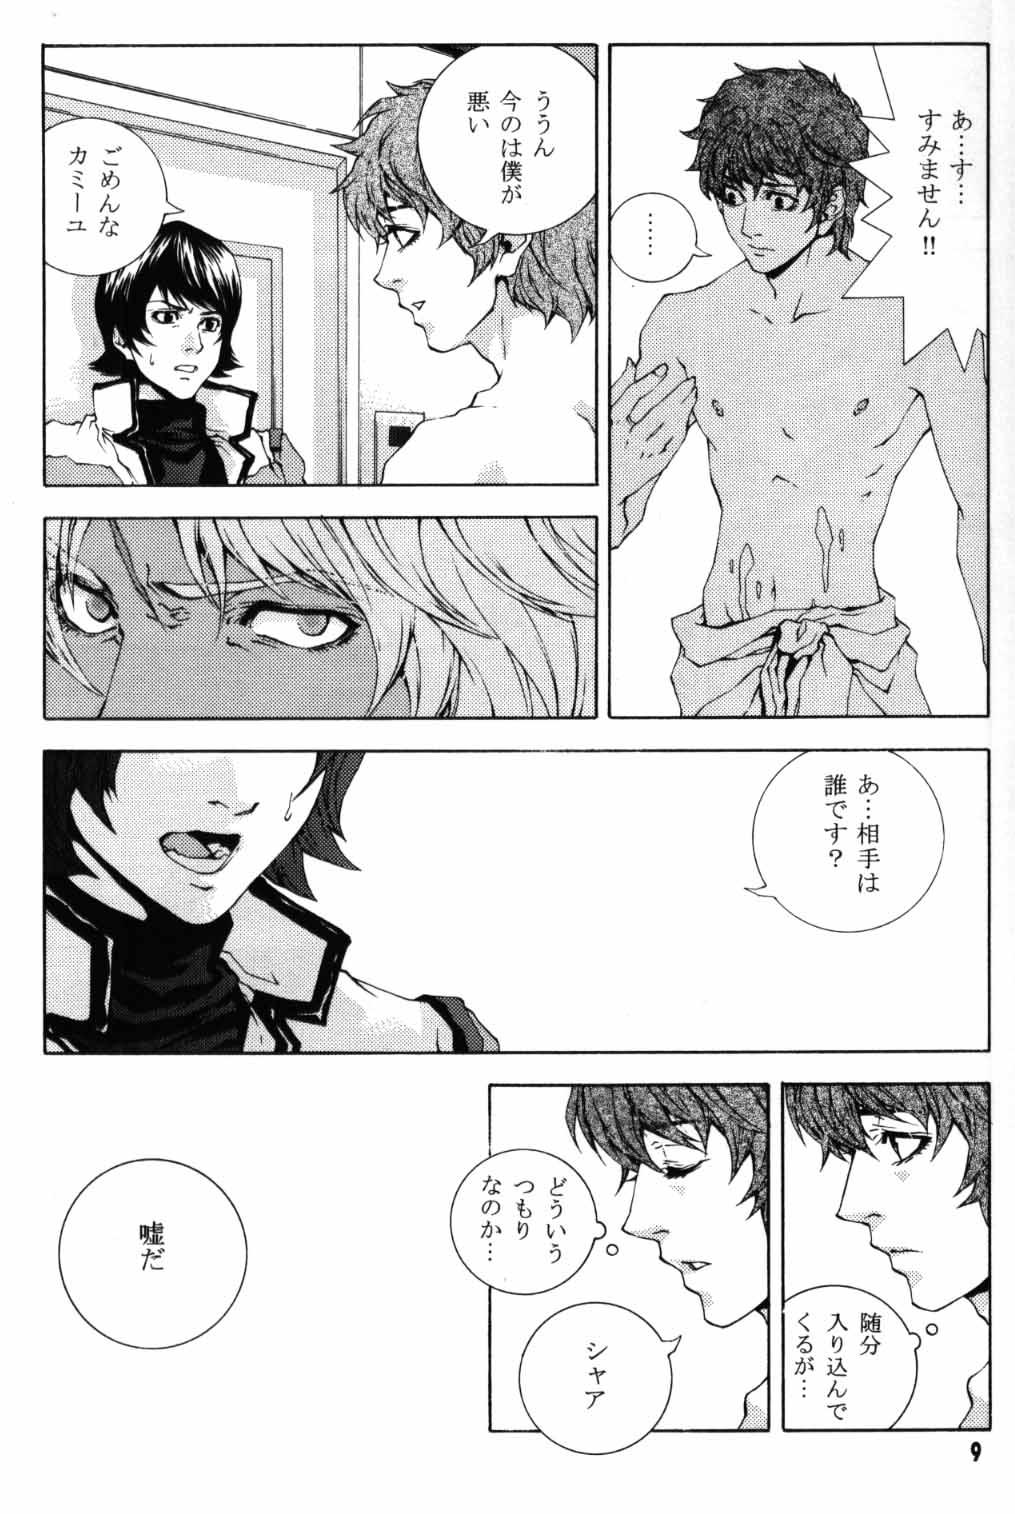 [APART (Yanagisawa Yukio)] Koi no you na Bakemono ga. (Zeta Gundam) [アパート (柳沢ゆきお)] 恋のような化物が。 (Ζガンダム)